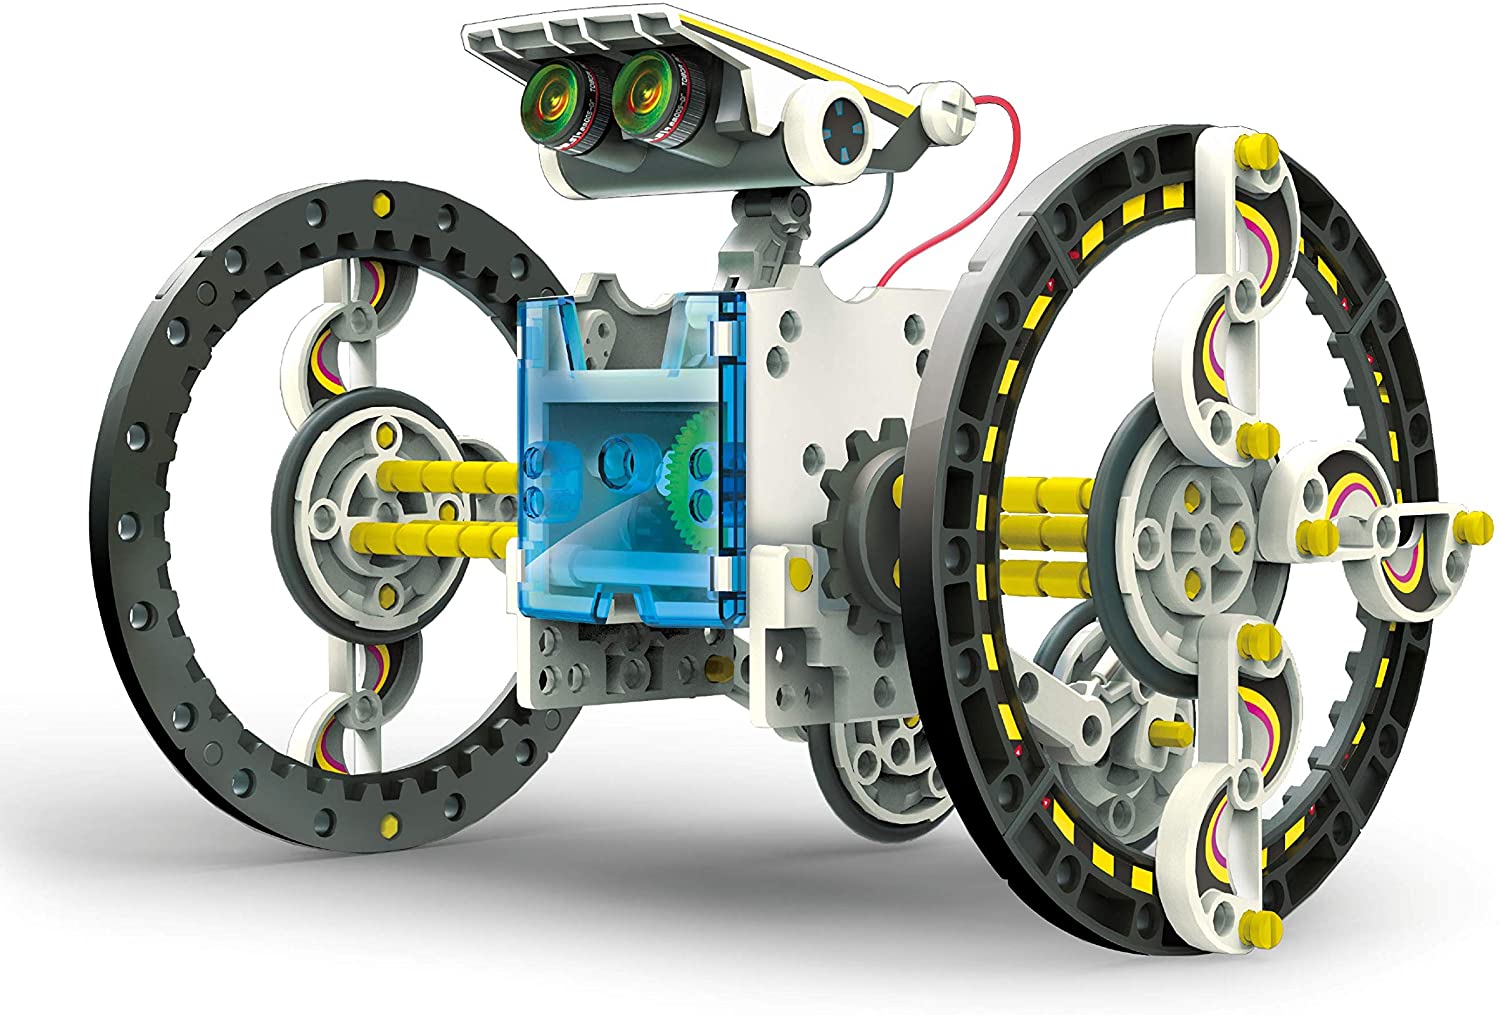 Teach Tech SolarBot.14, Transforming Solar Robot Kit, STEM Learning Toys for Kids 10+